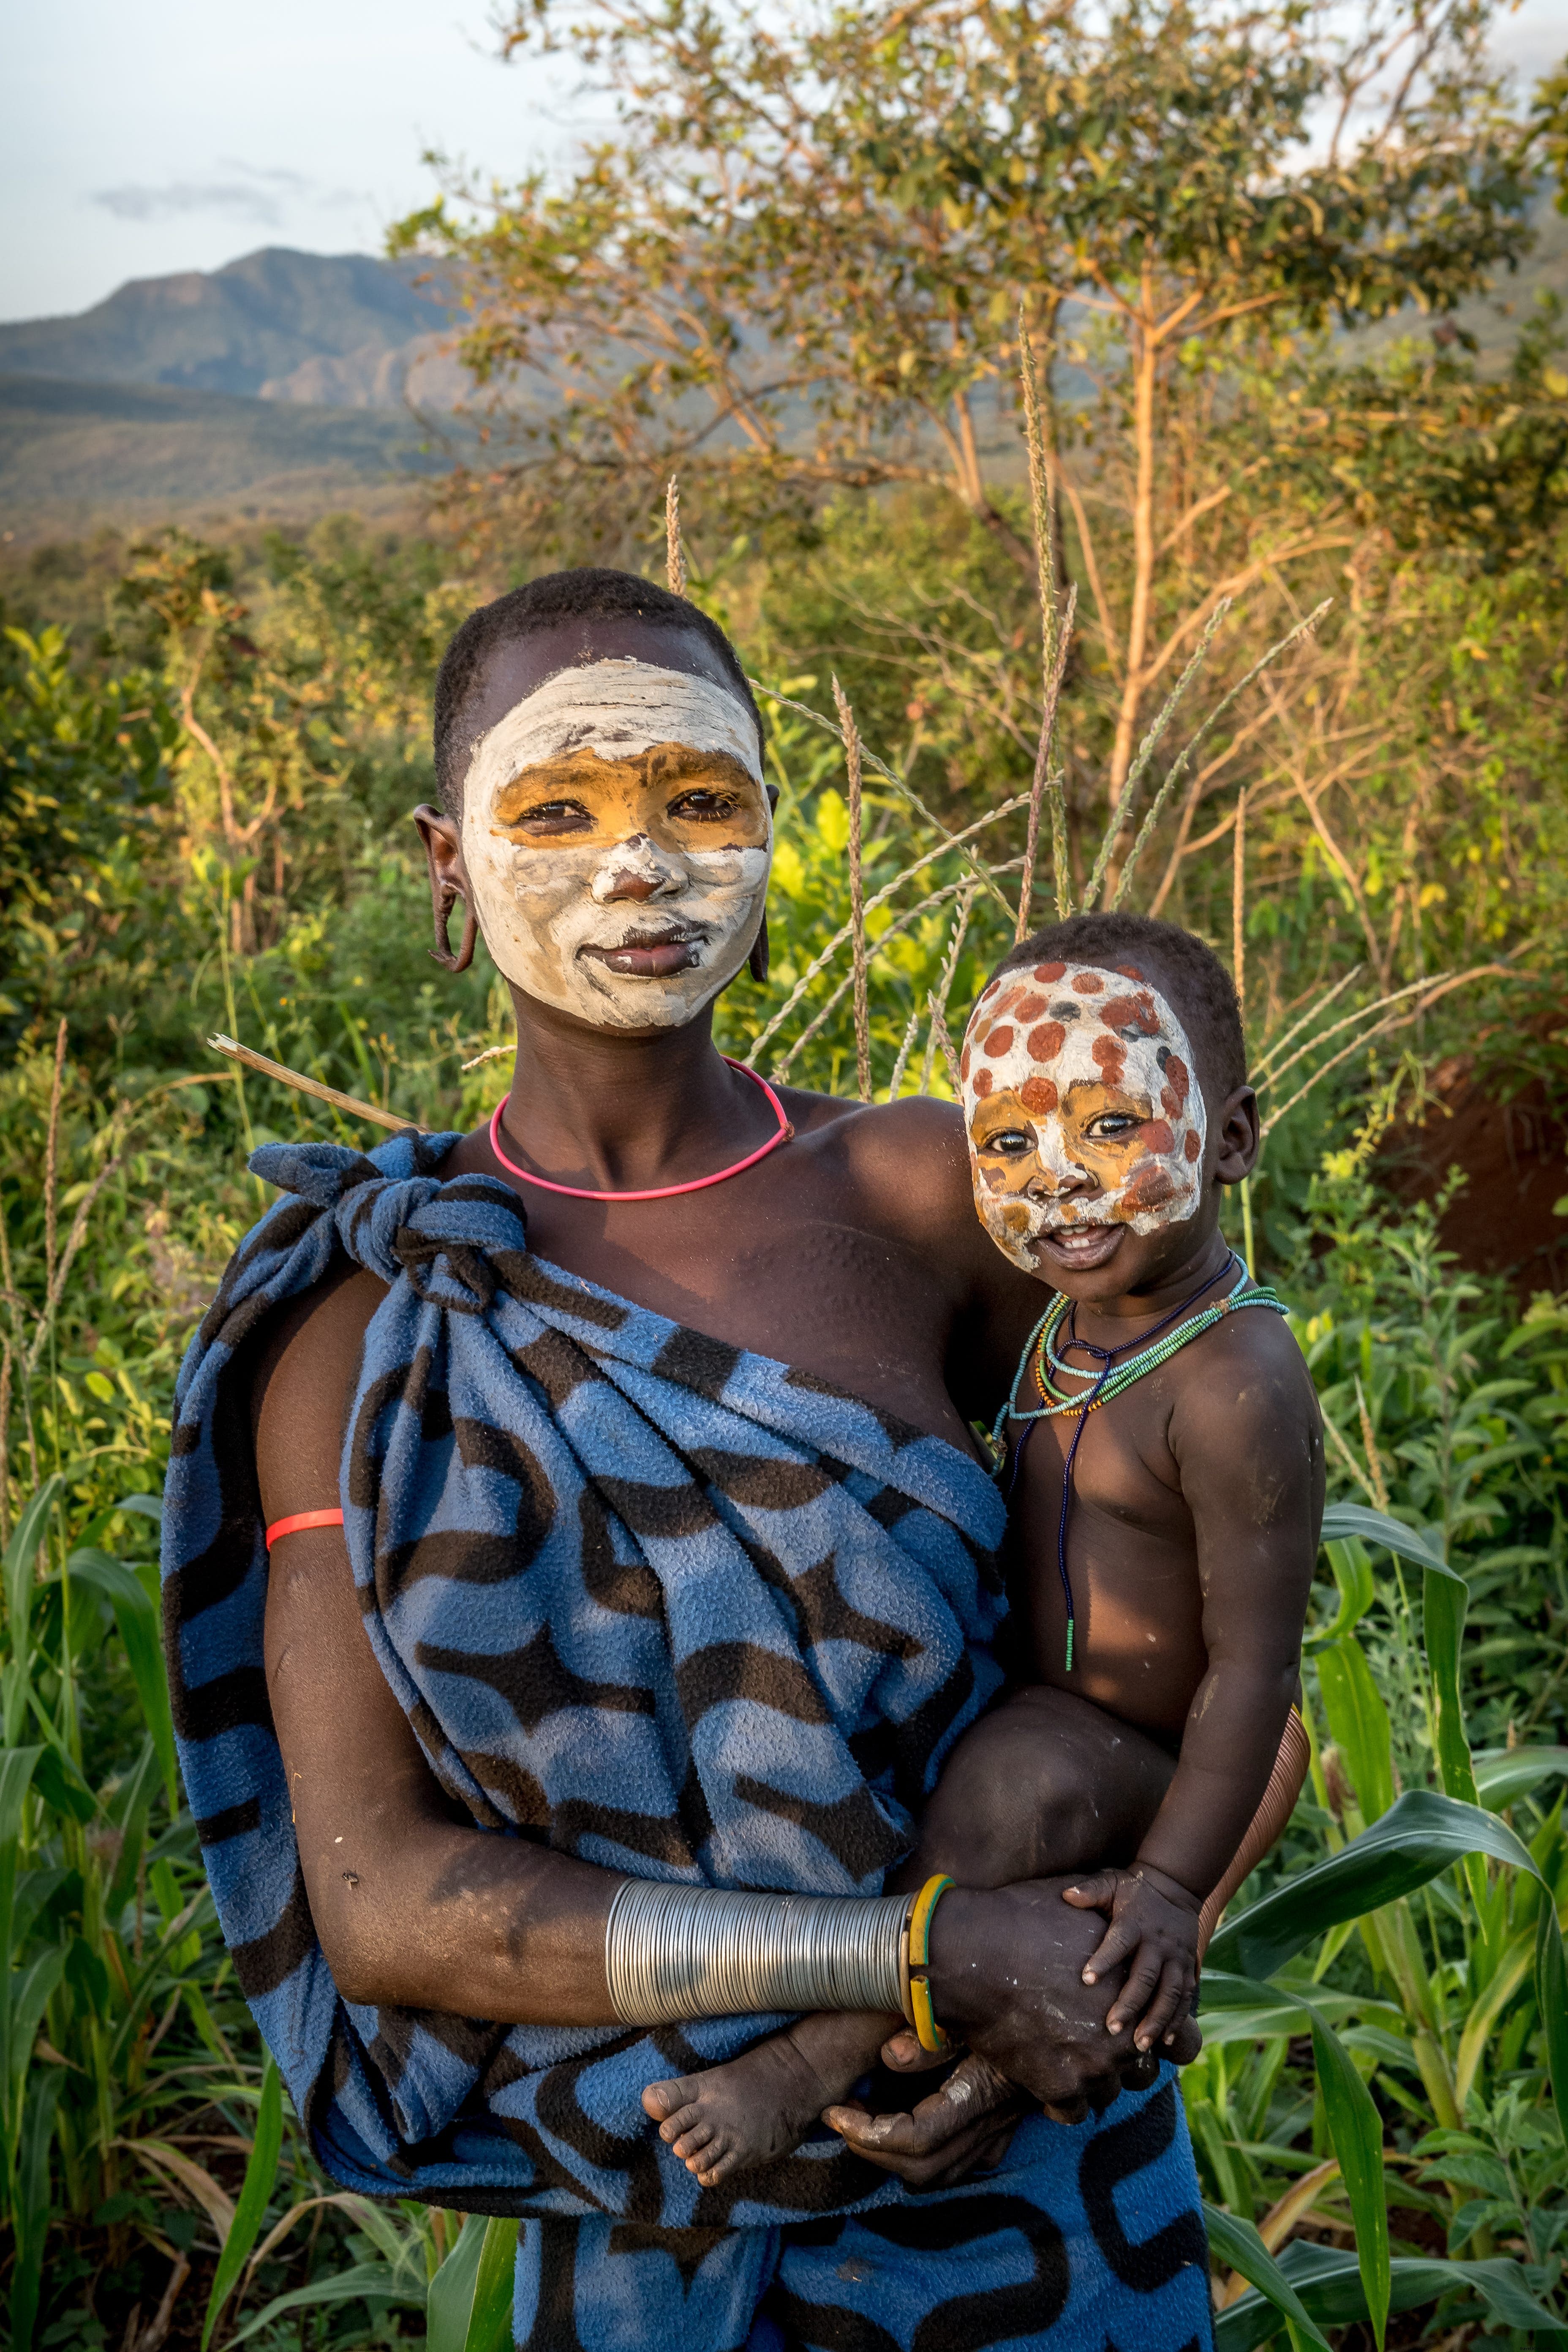 Découvrez les incroyables photos de tribus africaines isolées capturées par une infirmière de première ligne COVID 